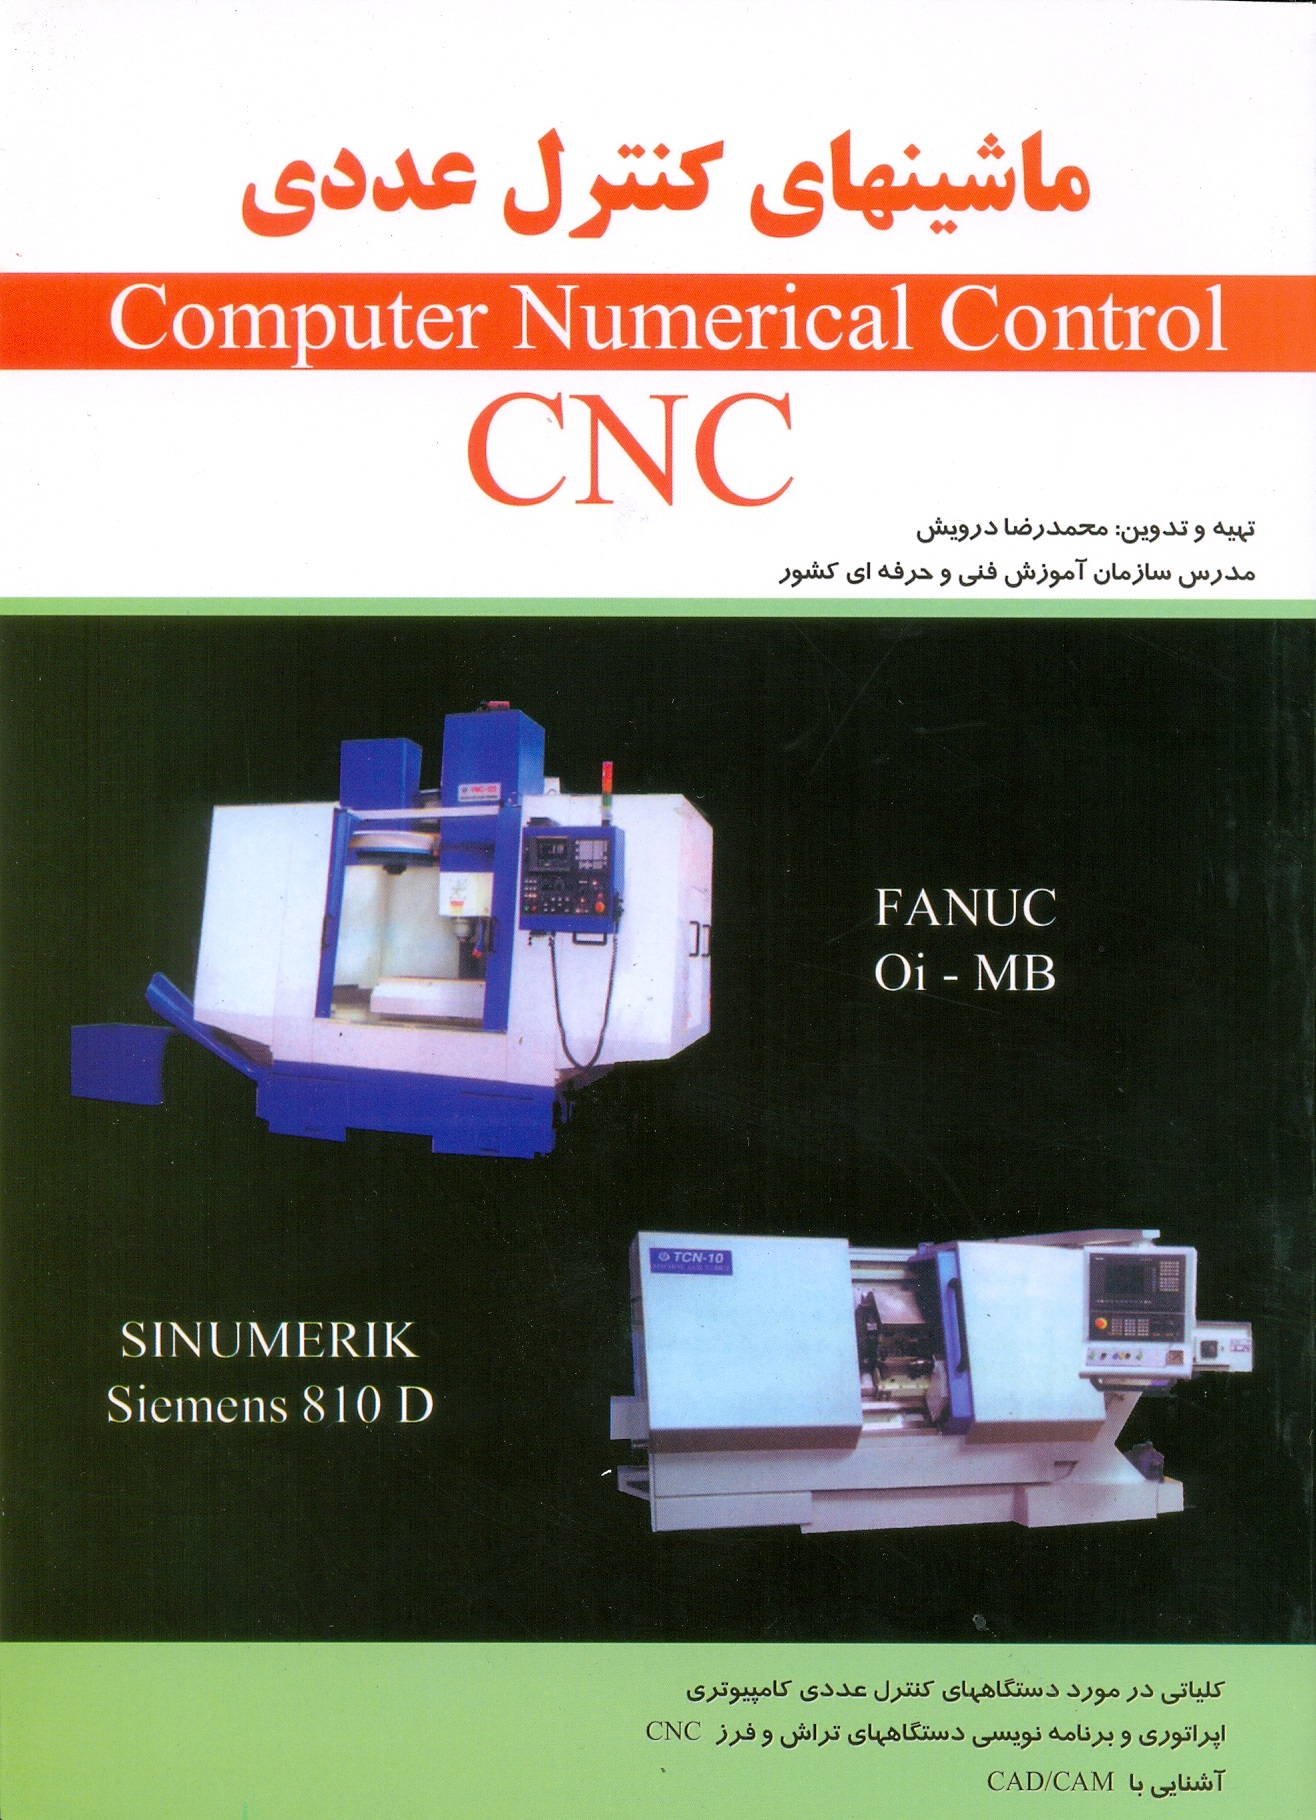 ماشینهای کنترل عددی CNCدرویش/پیام فن